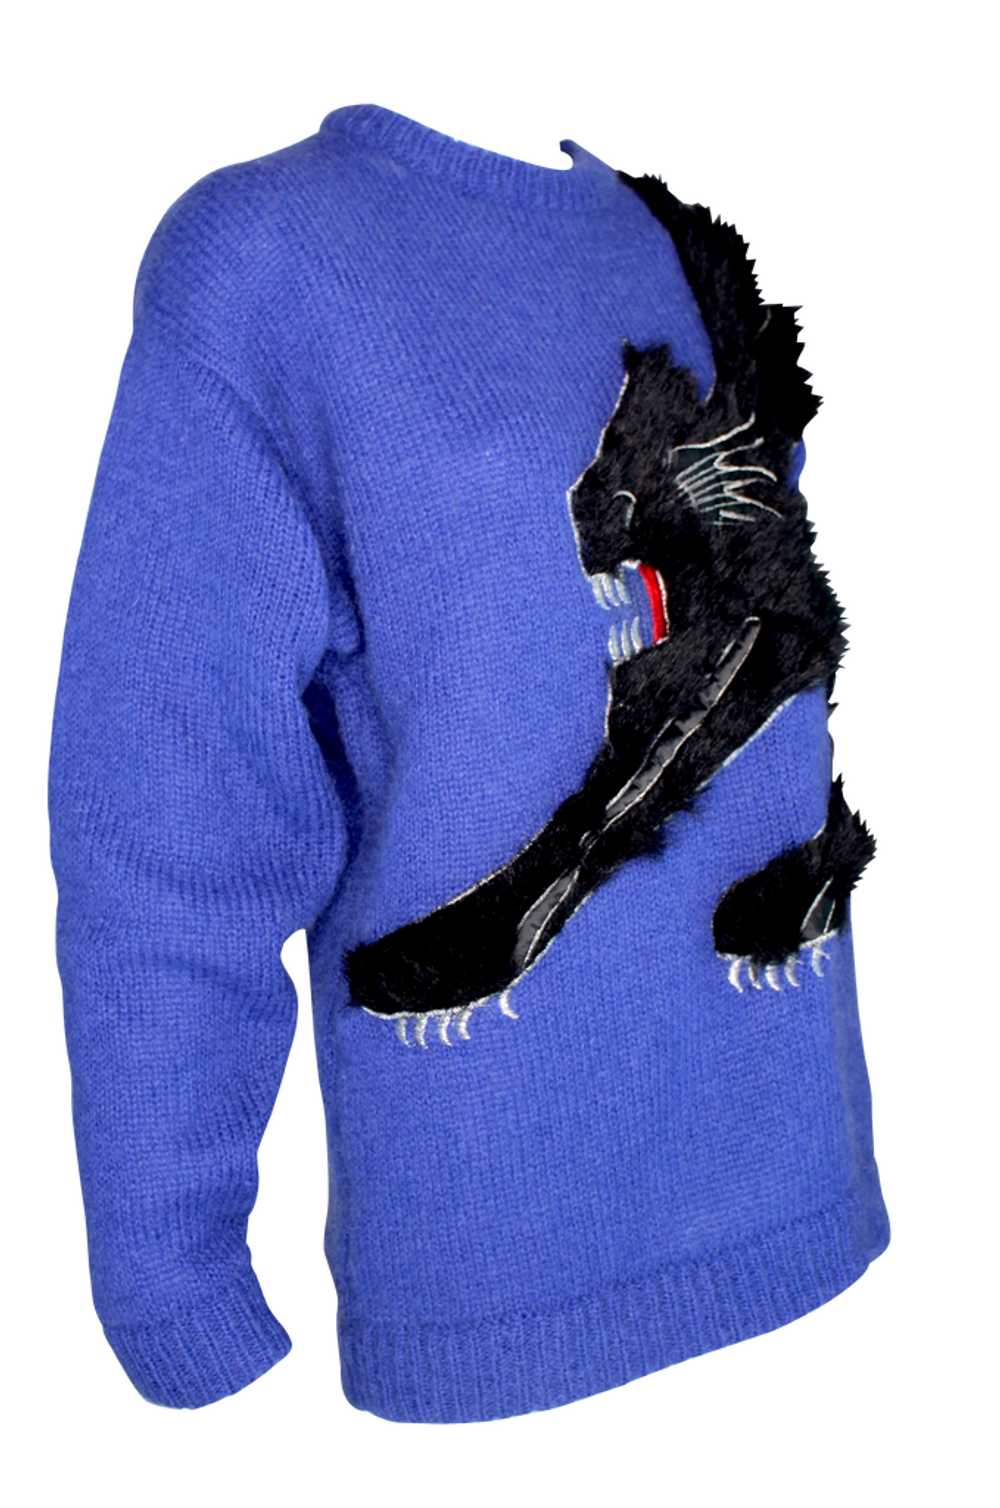 Kansai Yamamoto Cobalt Blue Knit Sweater with Bla… - image 3